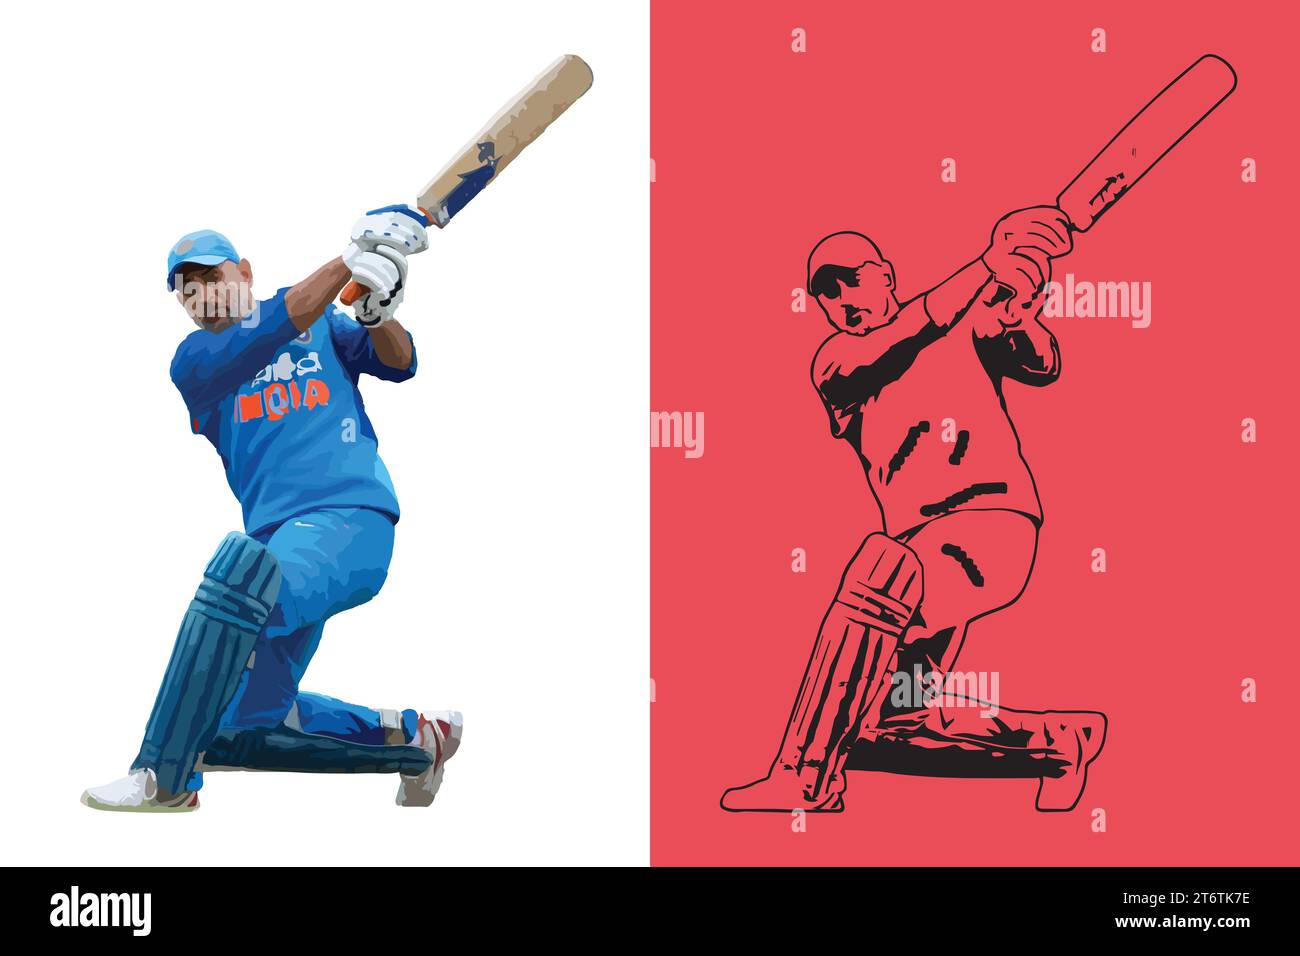 Mahendra Singh Dhoni ein indischer Cricketspieler 2 in 1 Hintergrund, Vektorillustration abstraktes editierbares Bild Stock Vektor